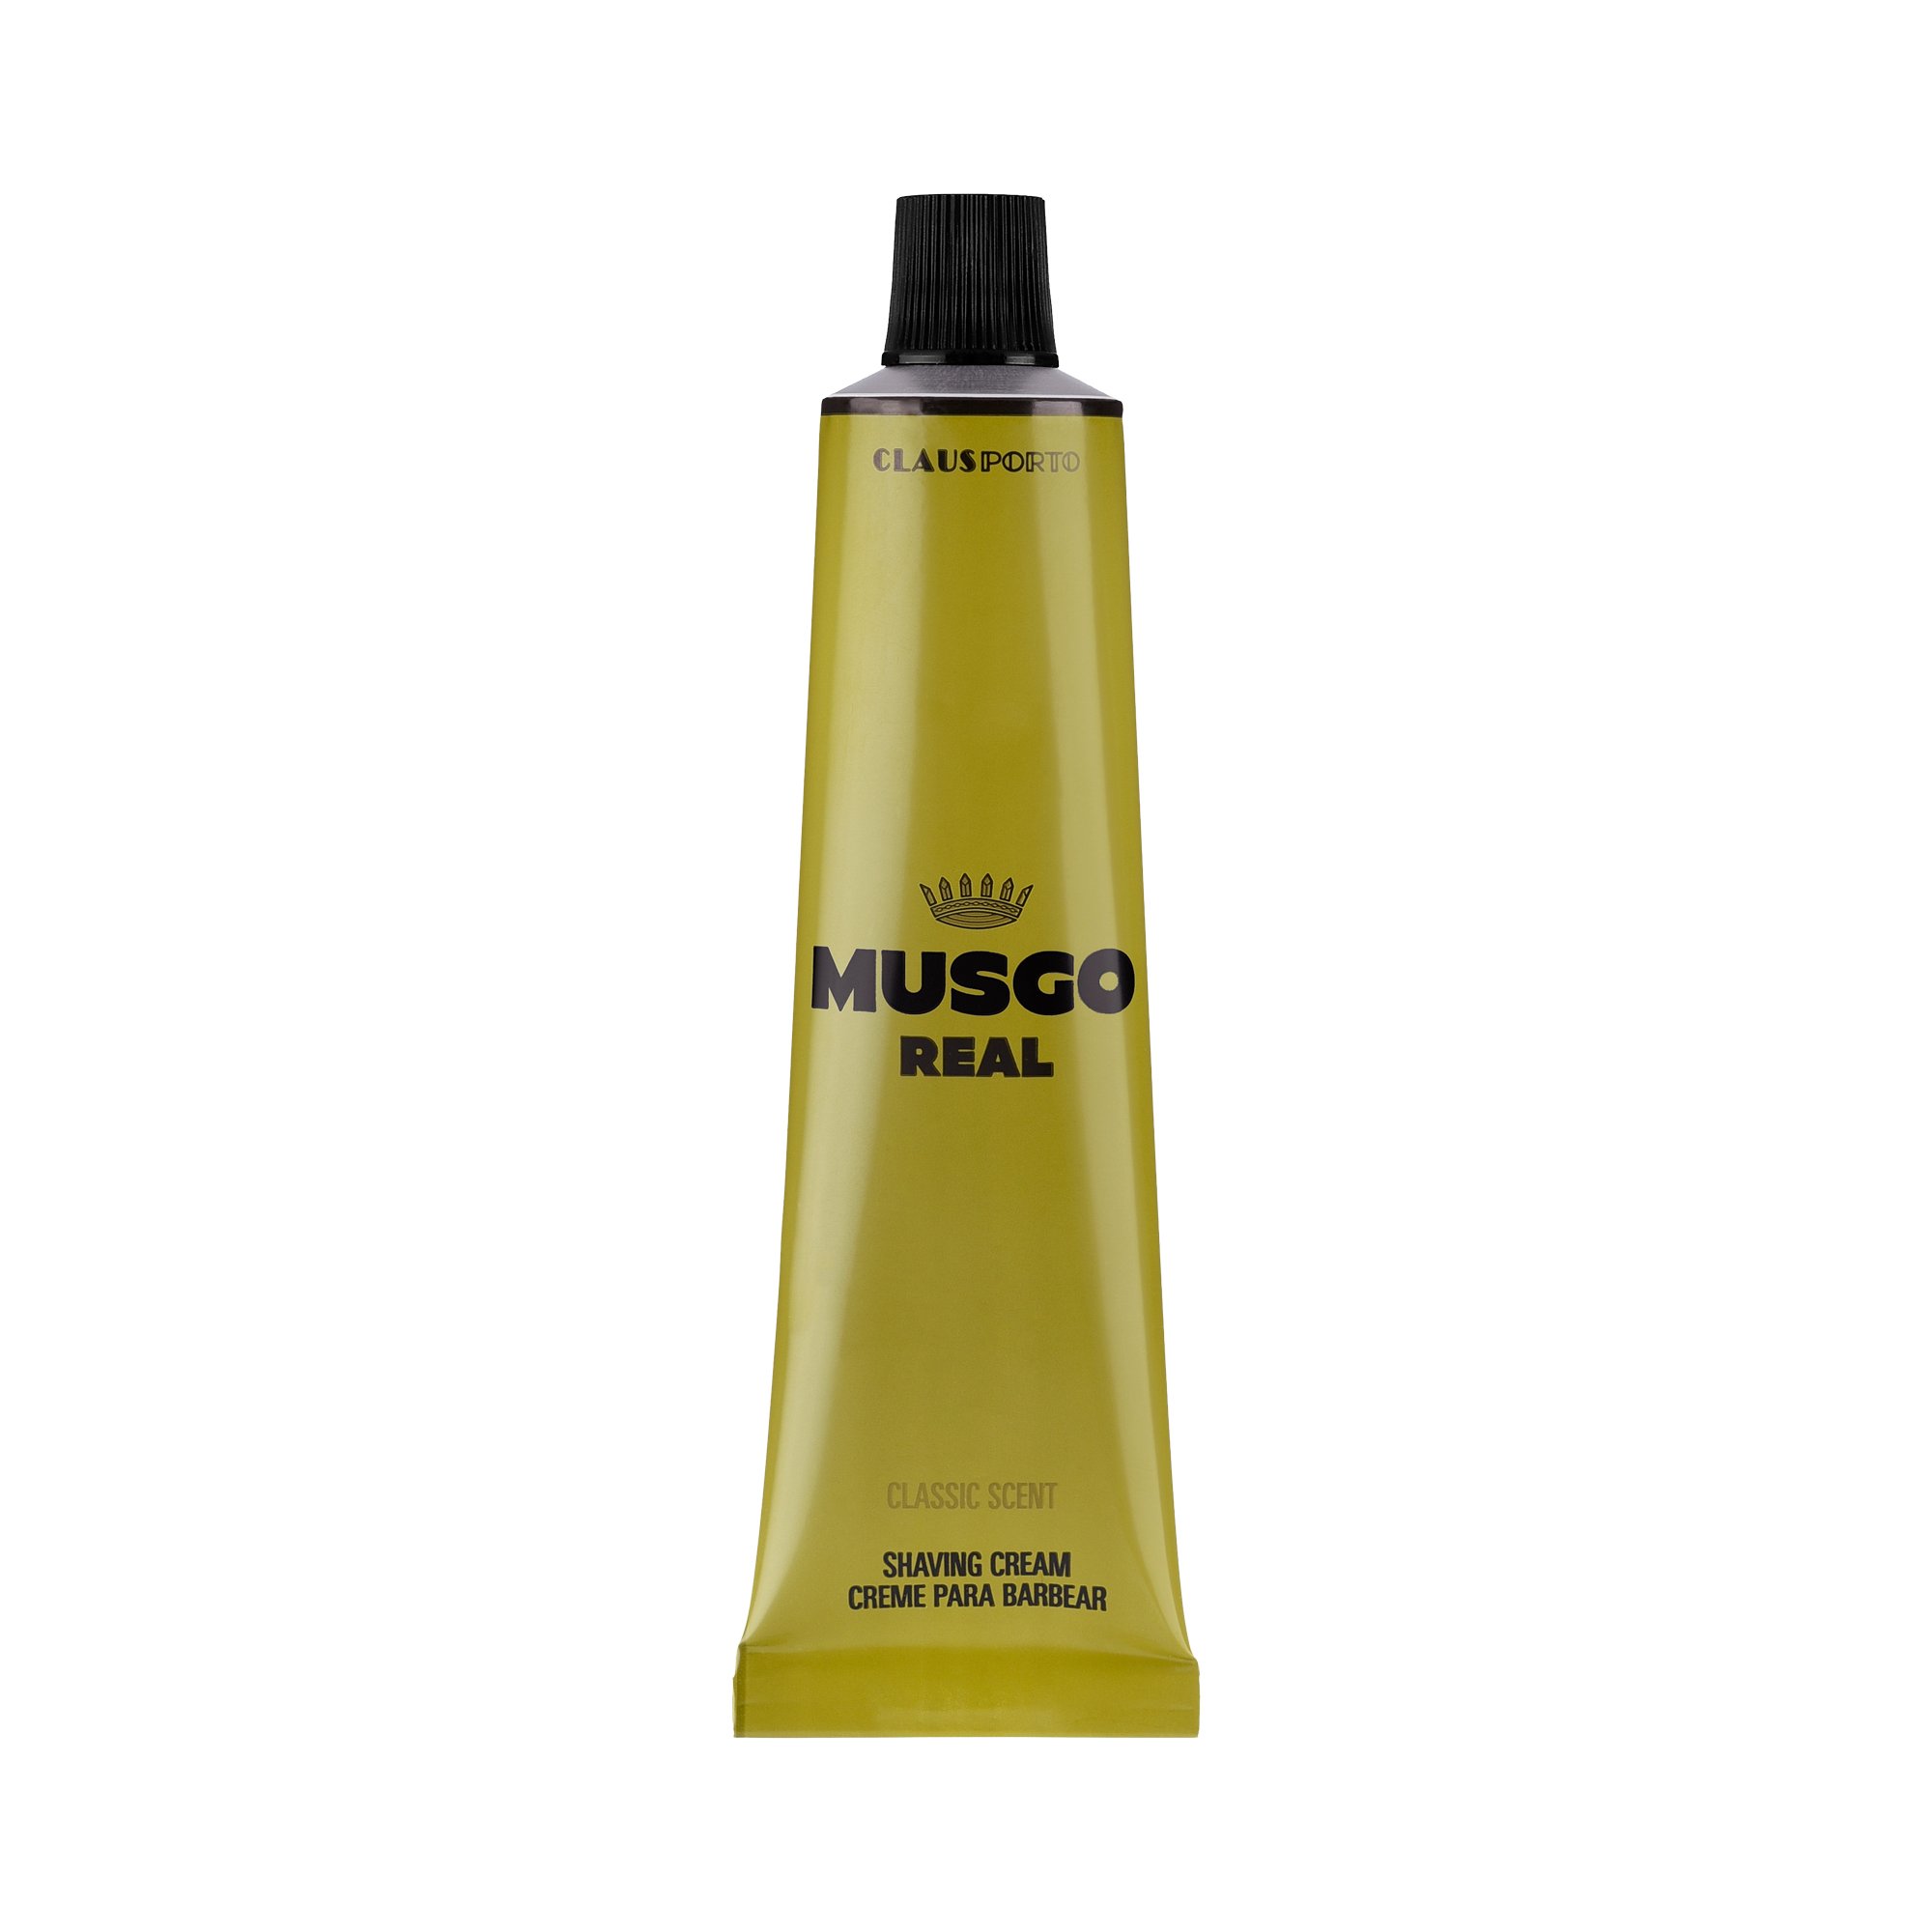 Musgo Real - Shaving Cream - Rasiercreme - Classic Scent